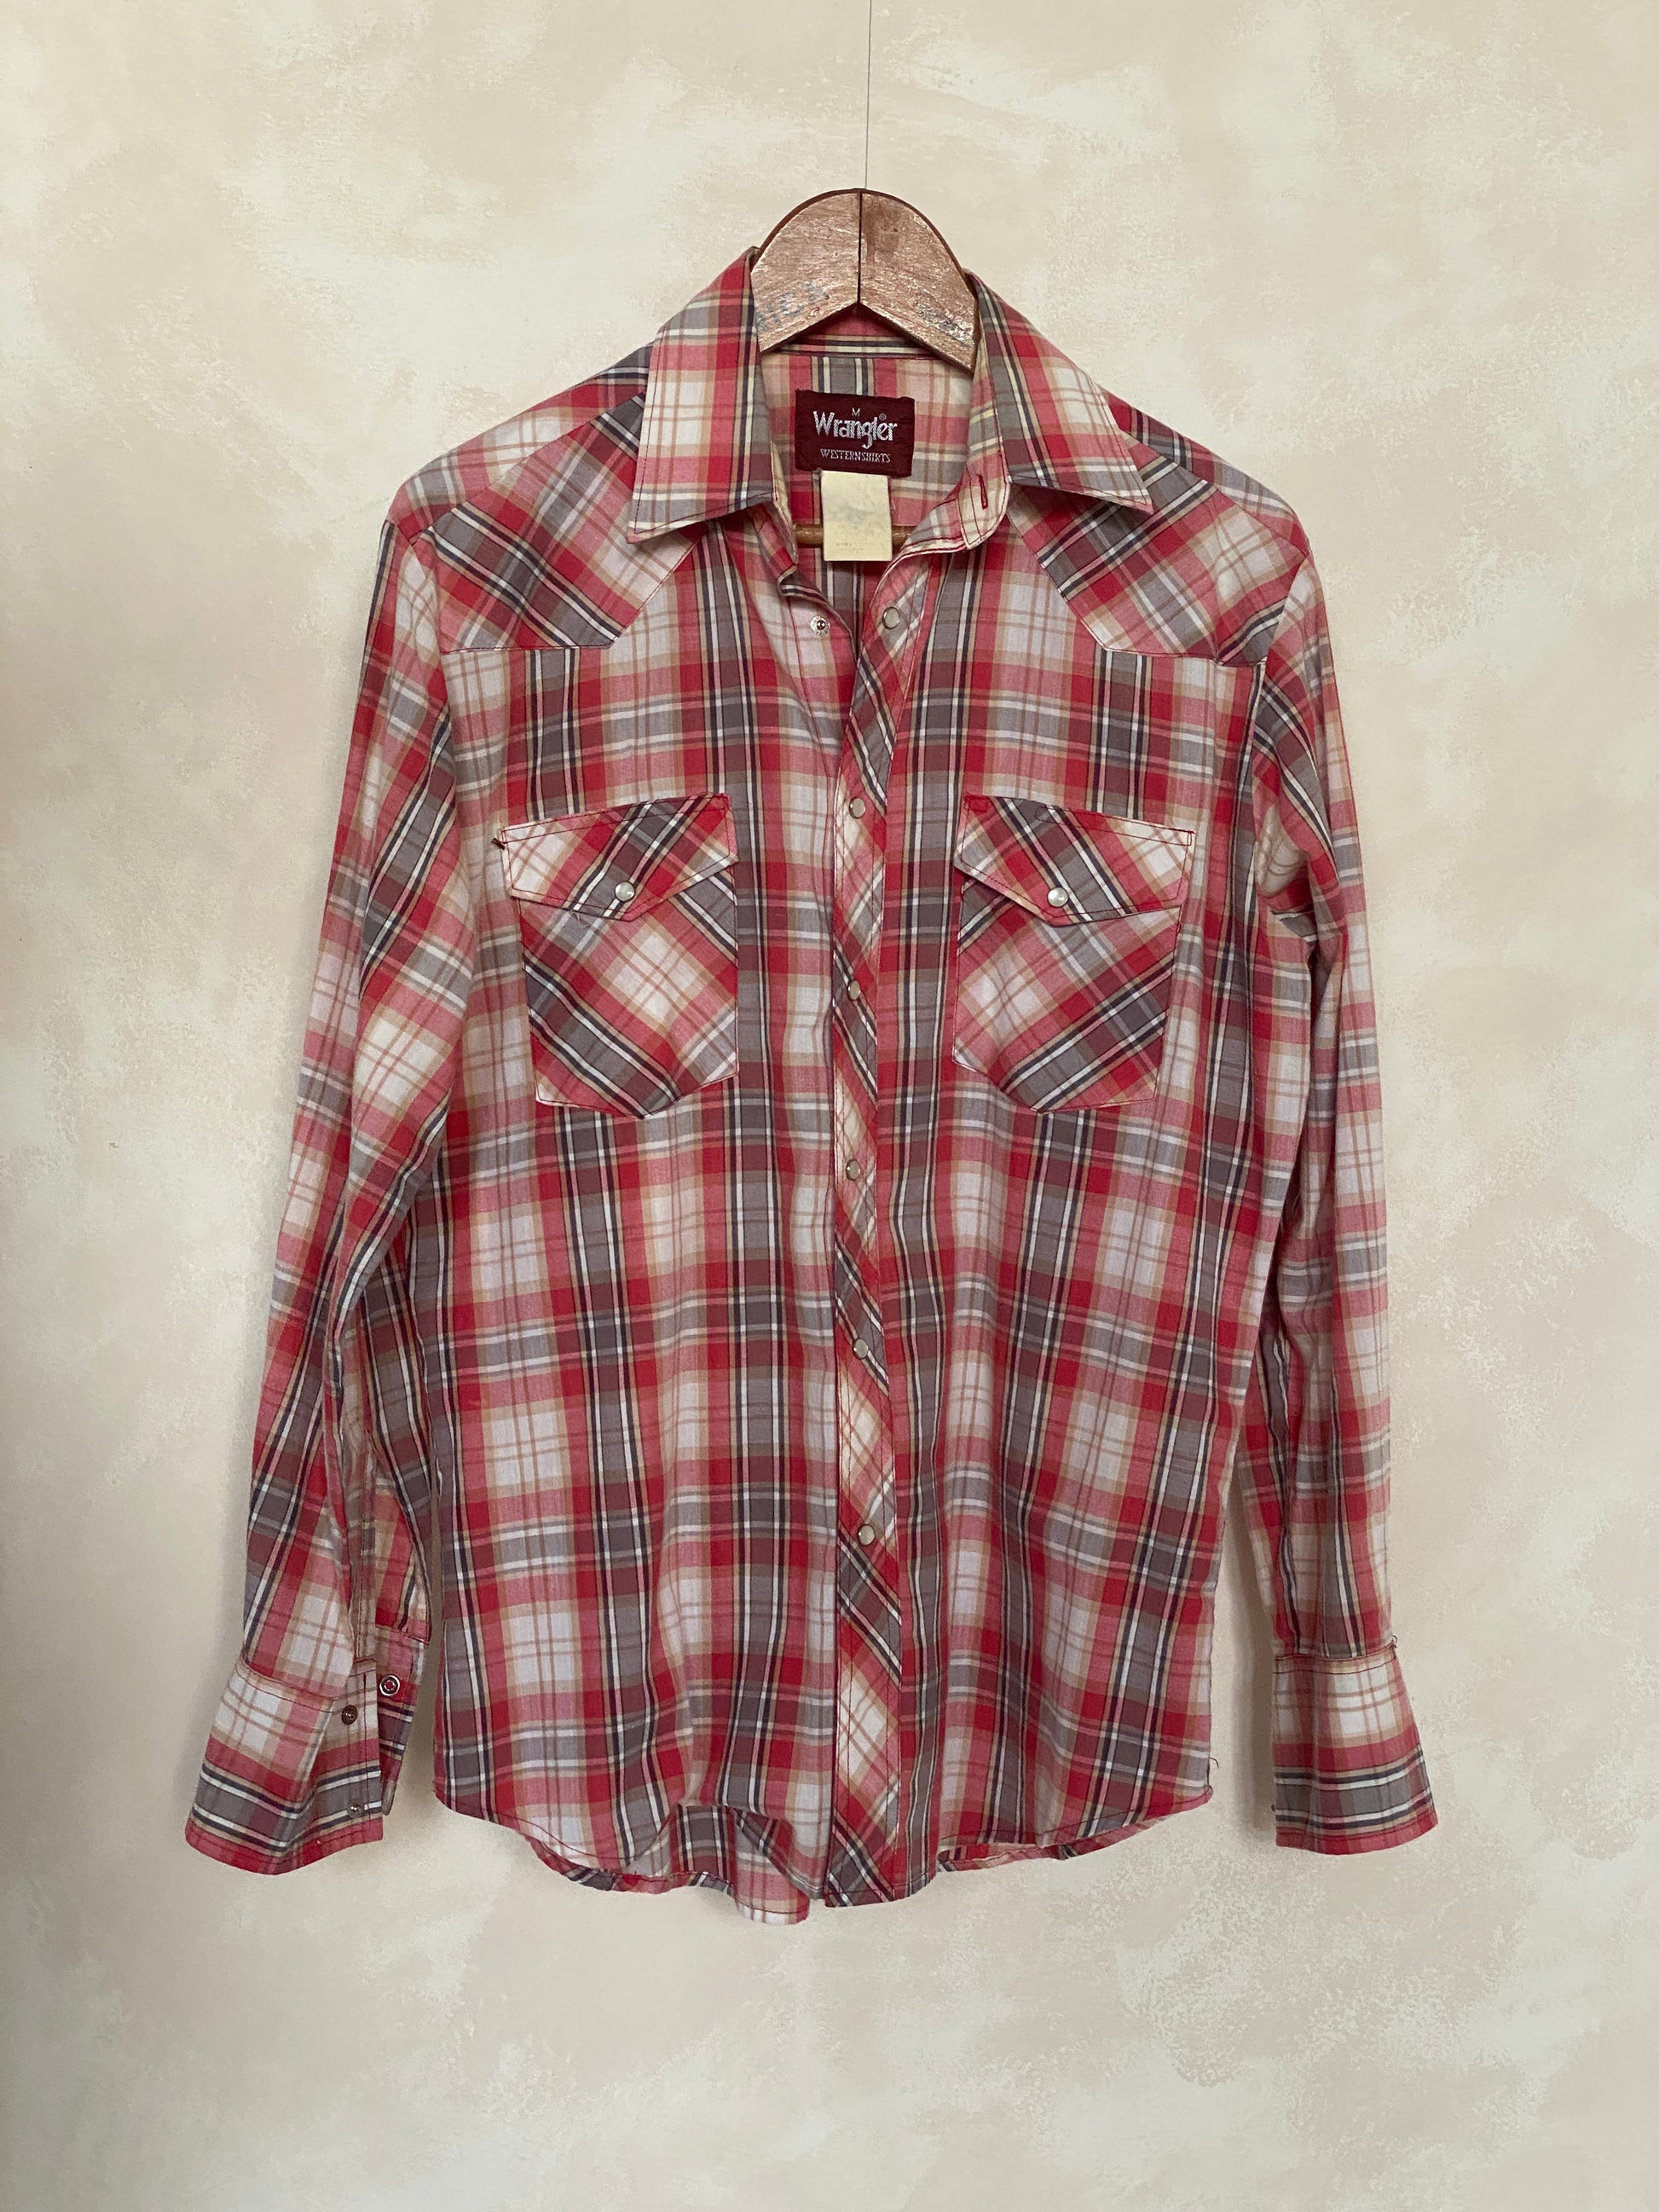 Med. Vintage 80’s plaid western Wrangler shirt